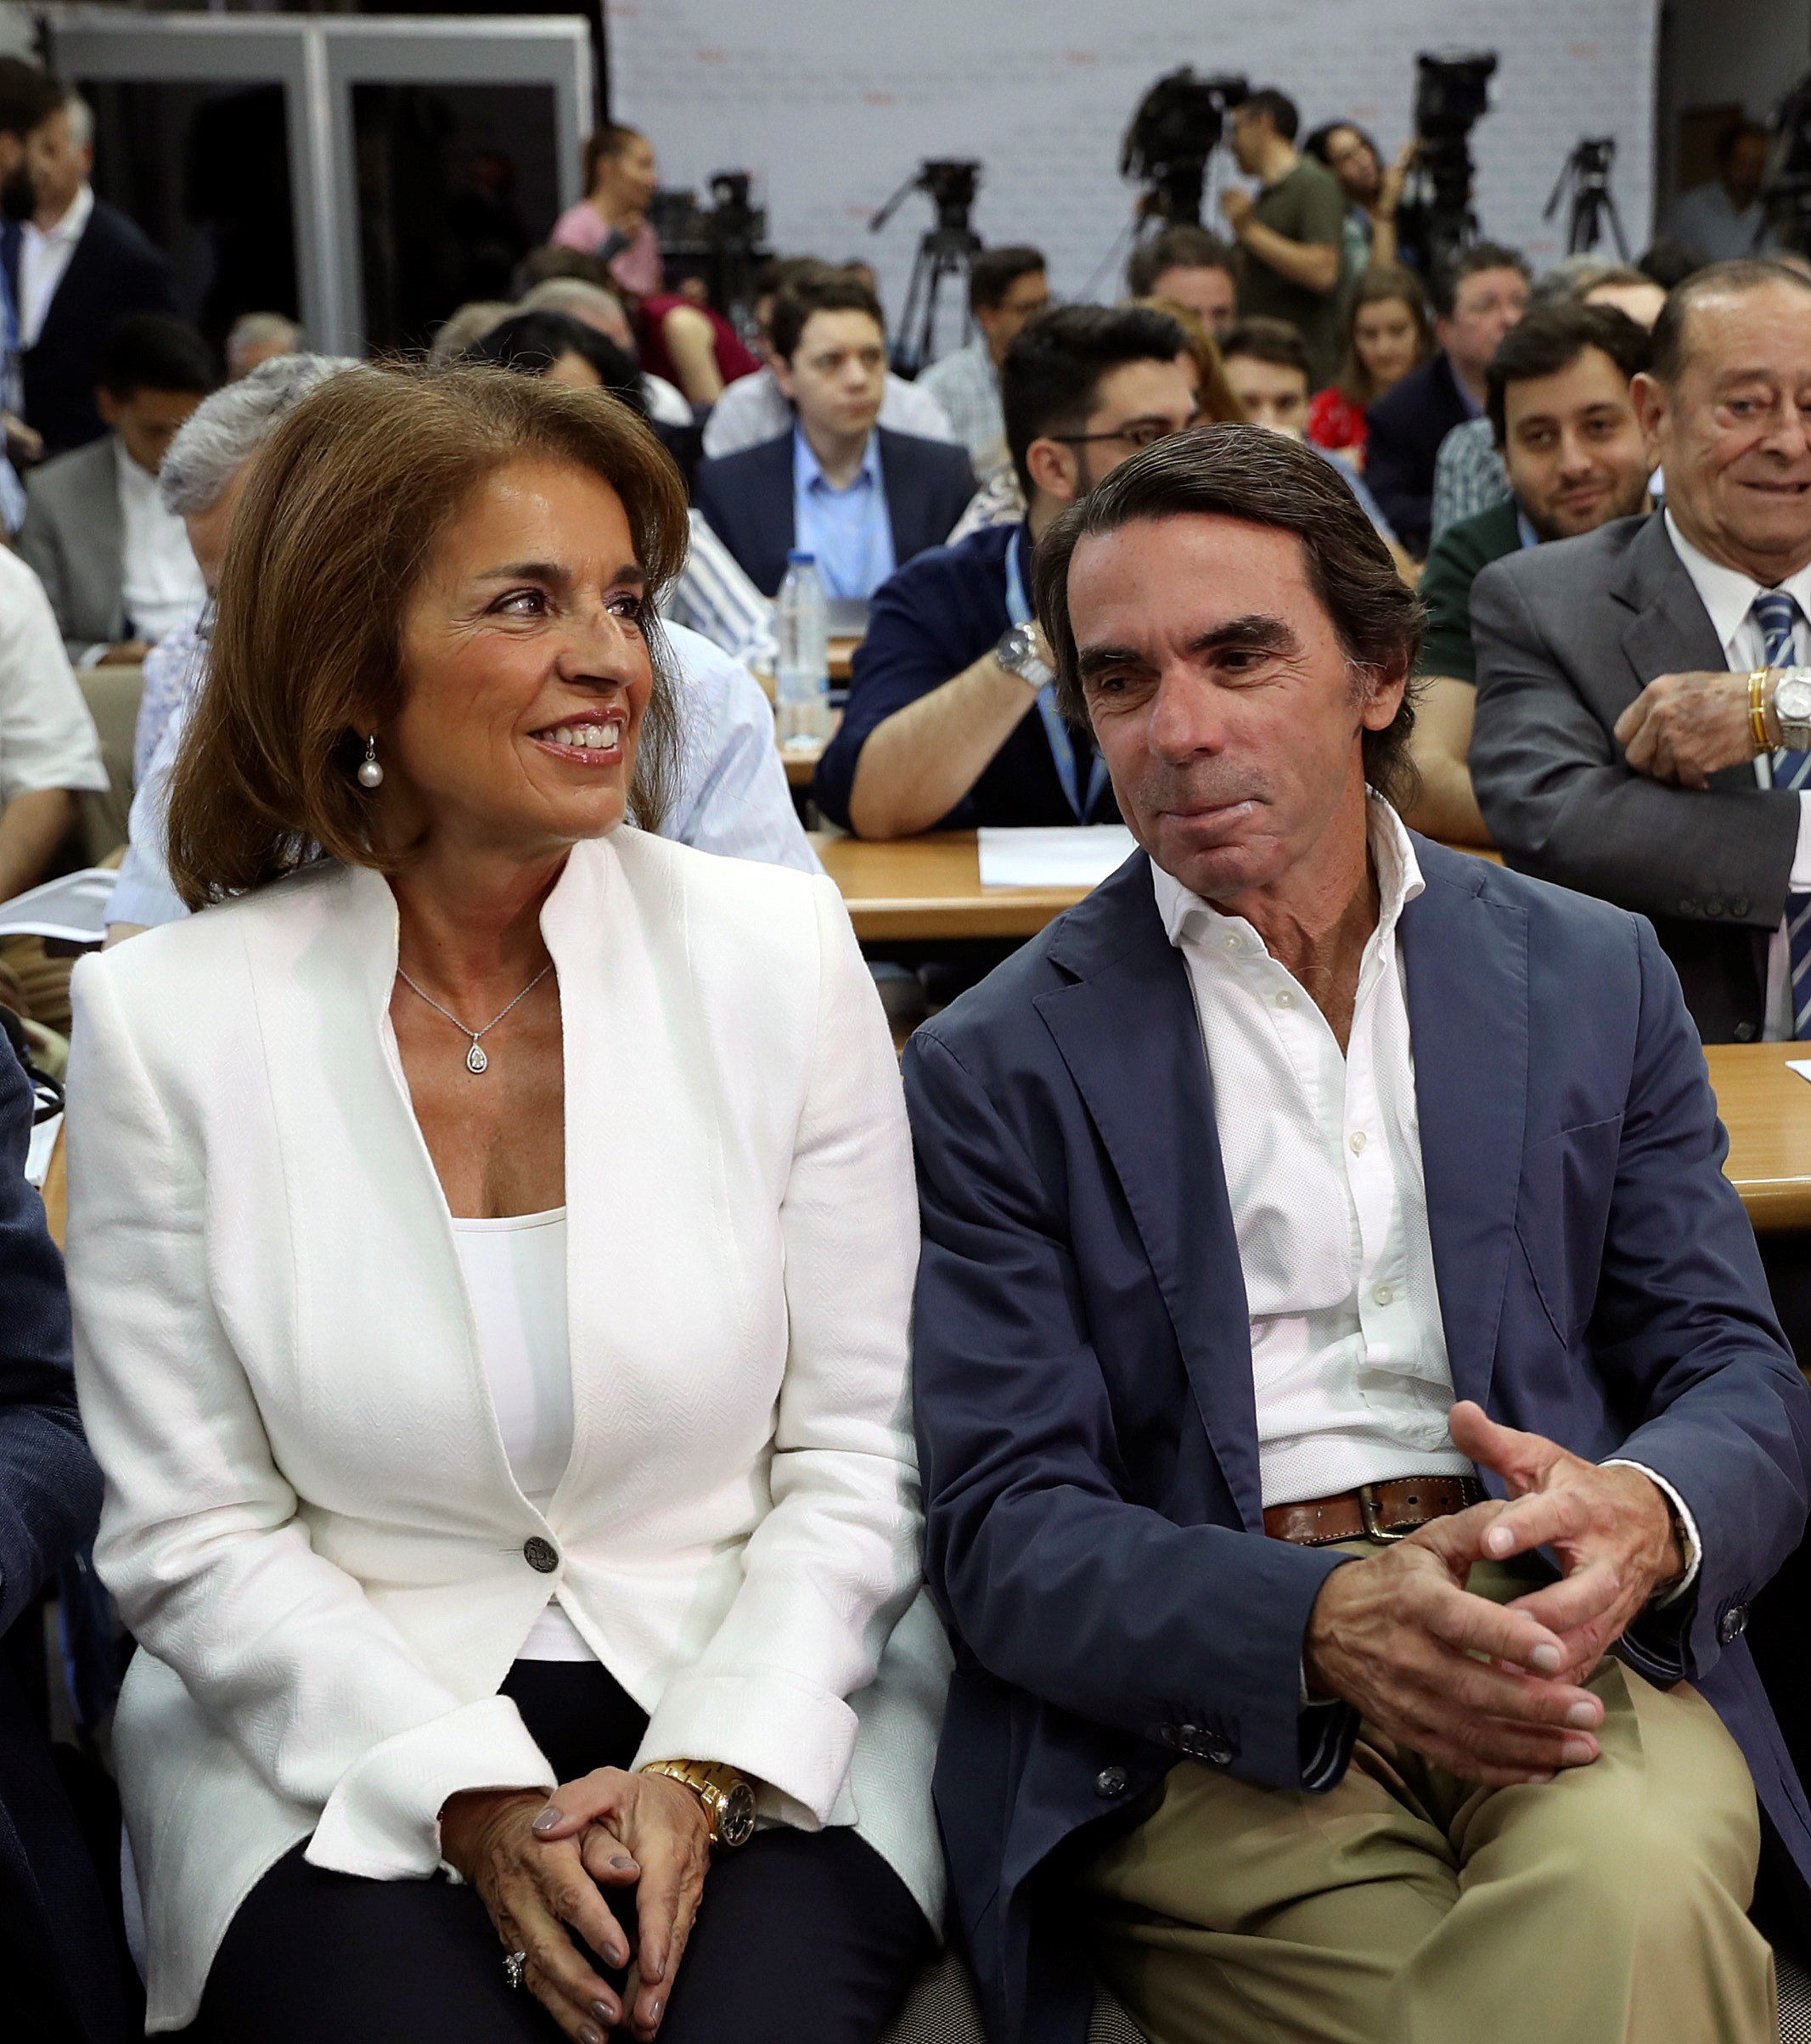 El expresidente del gobierno, José María Aznar, junto a su mujer Ana Botella, durante uno de los Cursos de Verano de la Complutense en El Escorial